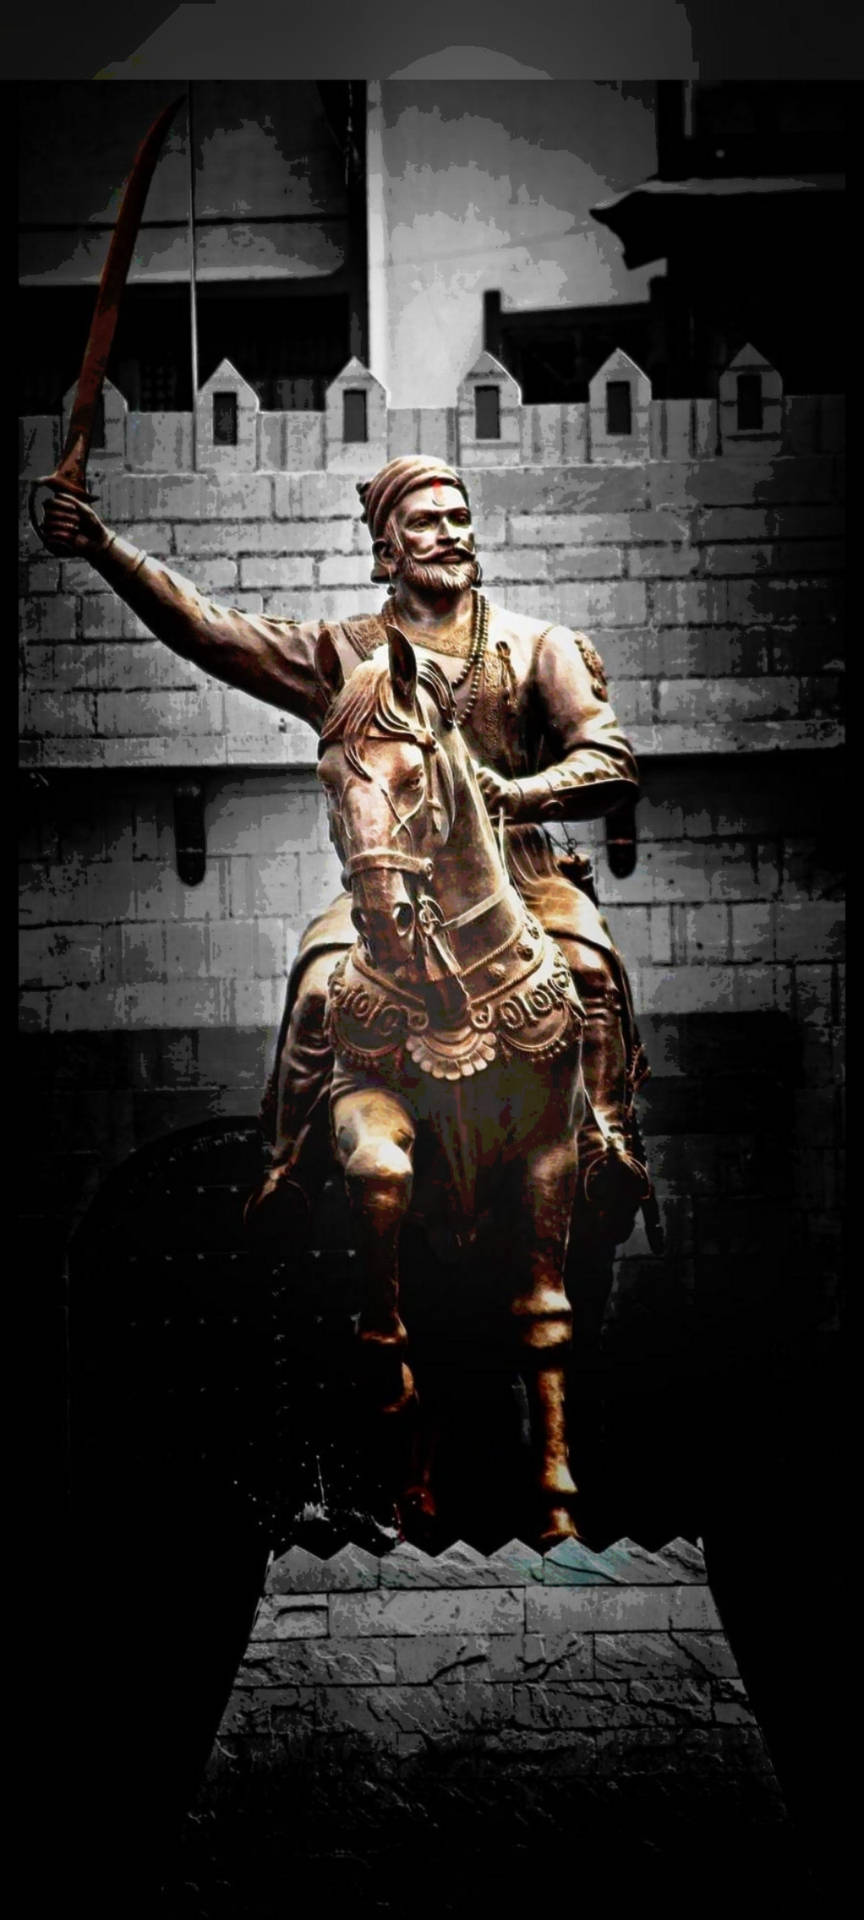 Mighty Chhatrapati Shivaji Maharaj - The Maratha Warrior King. Background